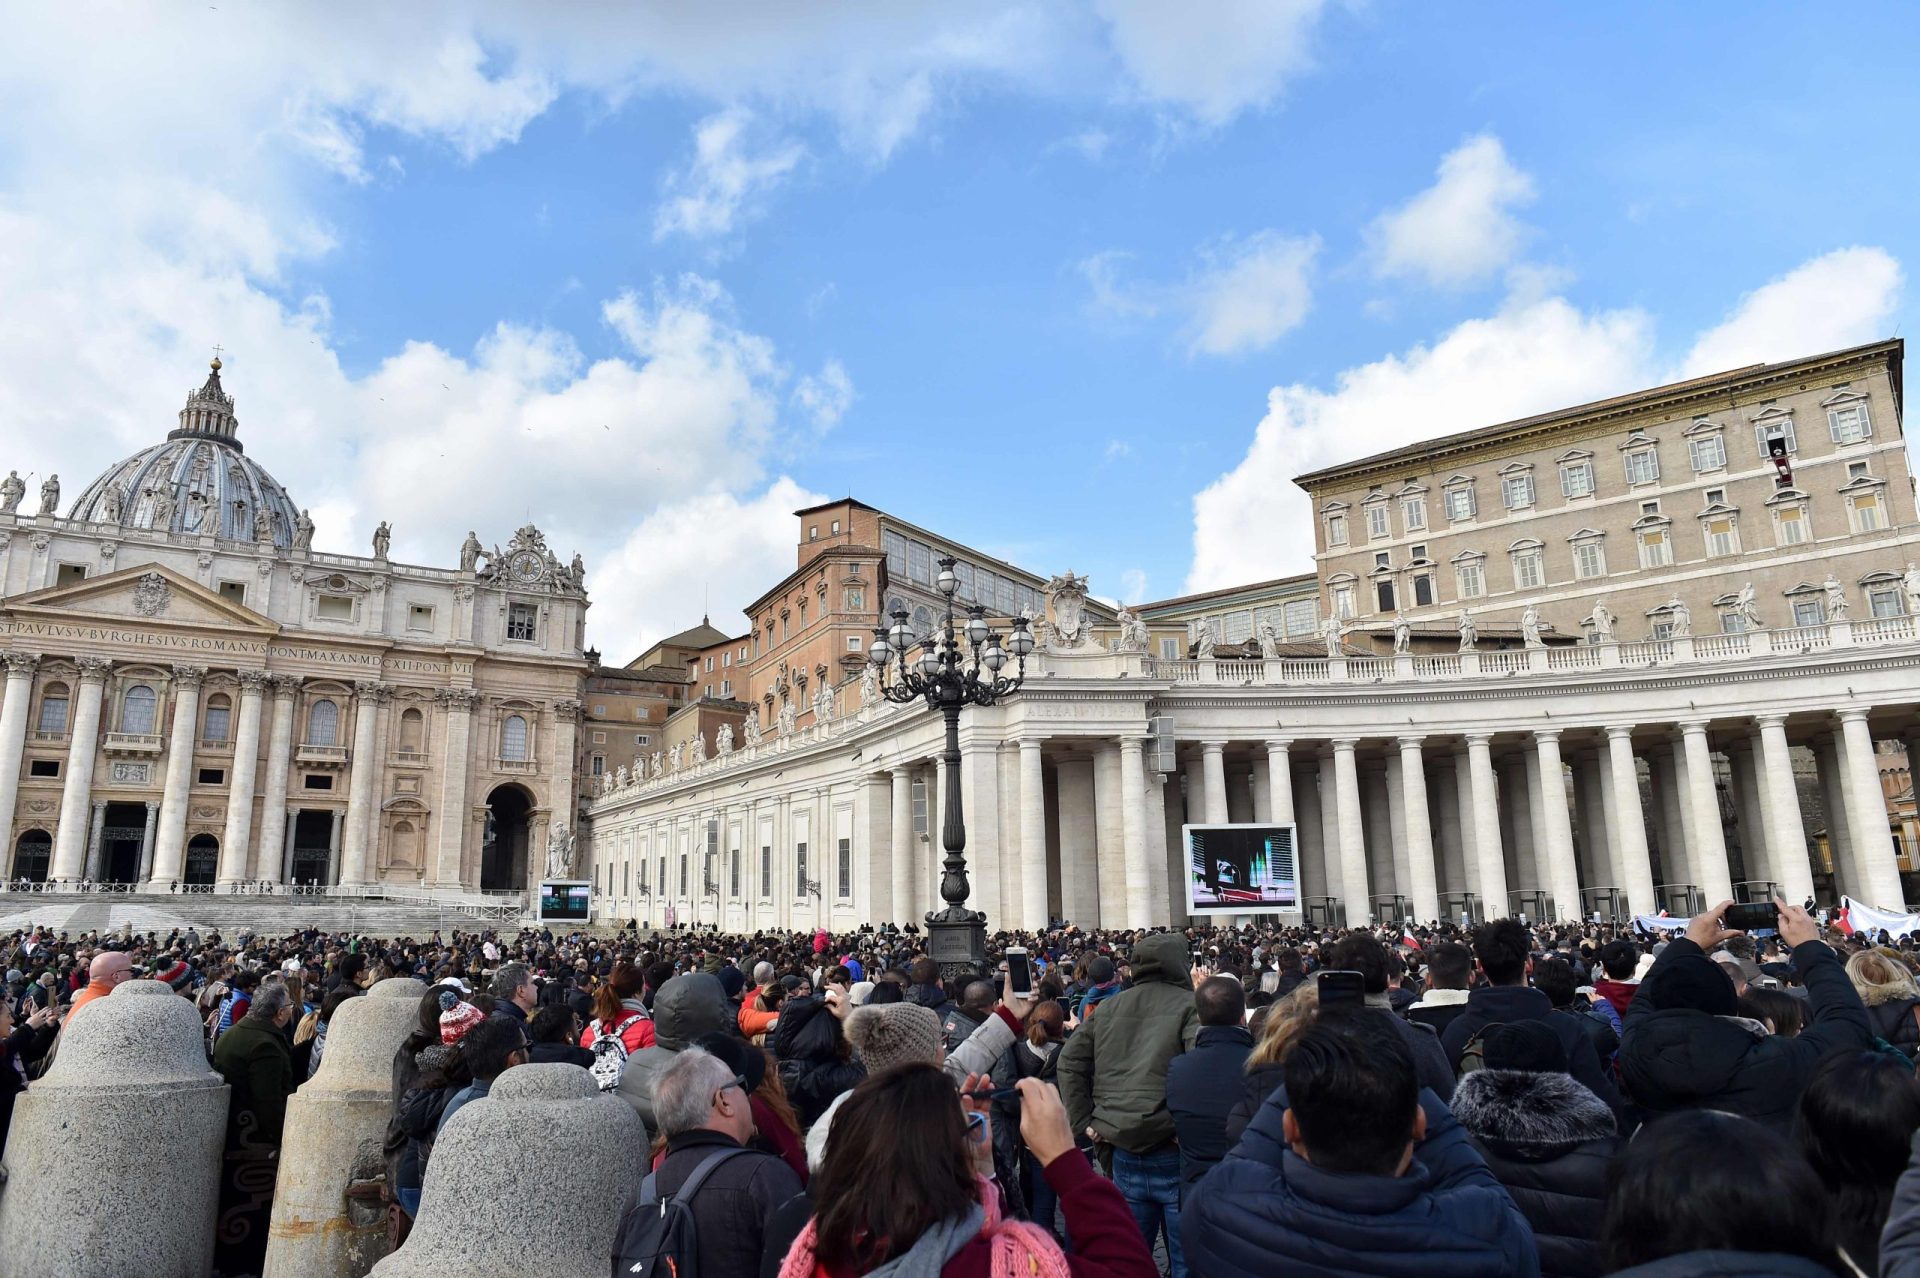 Vaticano recebeu quase 900 denúncias de abusos sexuais em 2018